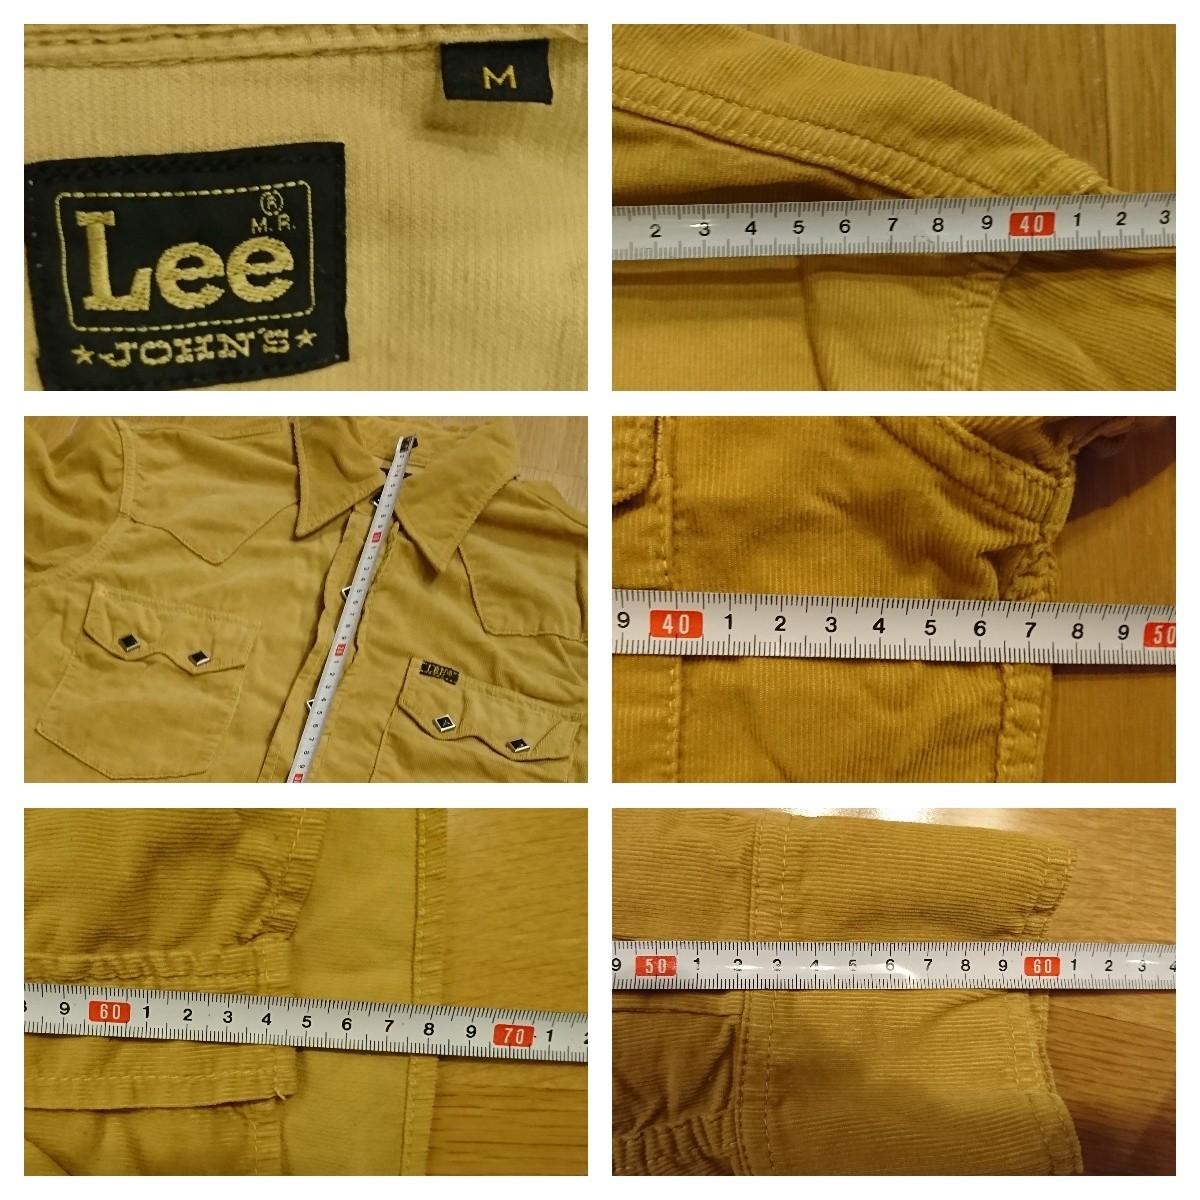 Lee リー コーデュロイ ウエスタン ネルシャツ Mサイズ ボタンダウン シミ色褪せあり 送料レターパックプラス520円_画像3